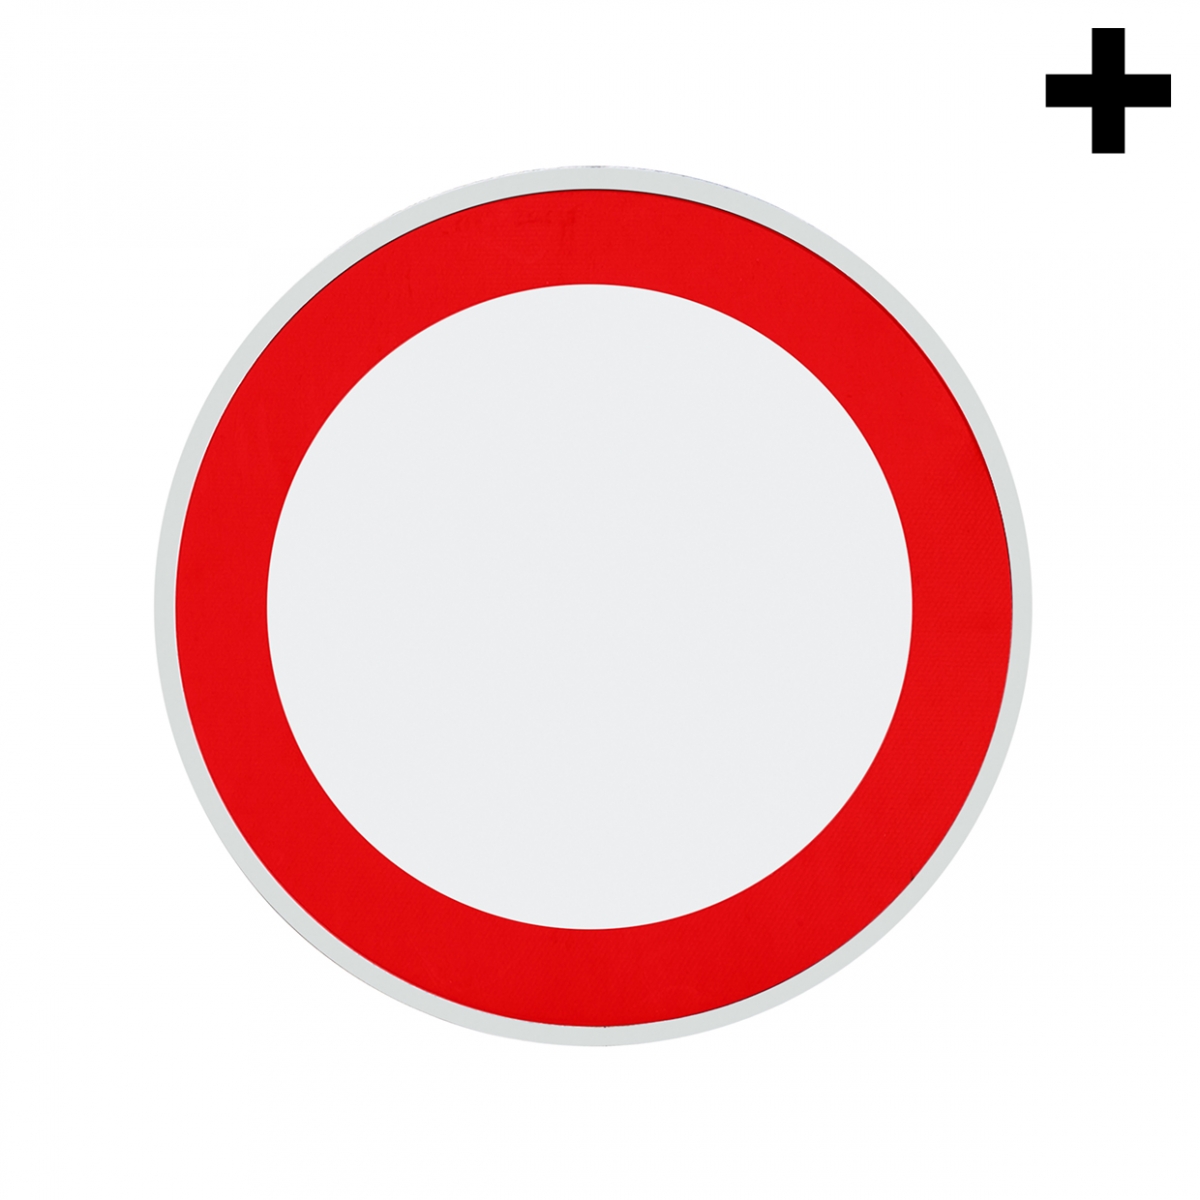 Imagen en la que se ve el plural del concepto señal de circulación prohibida